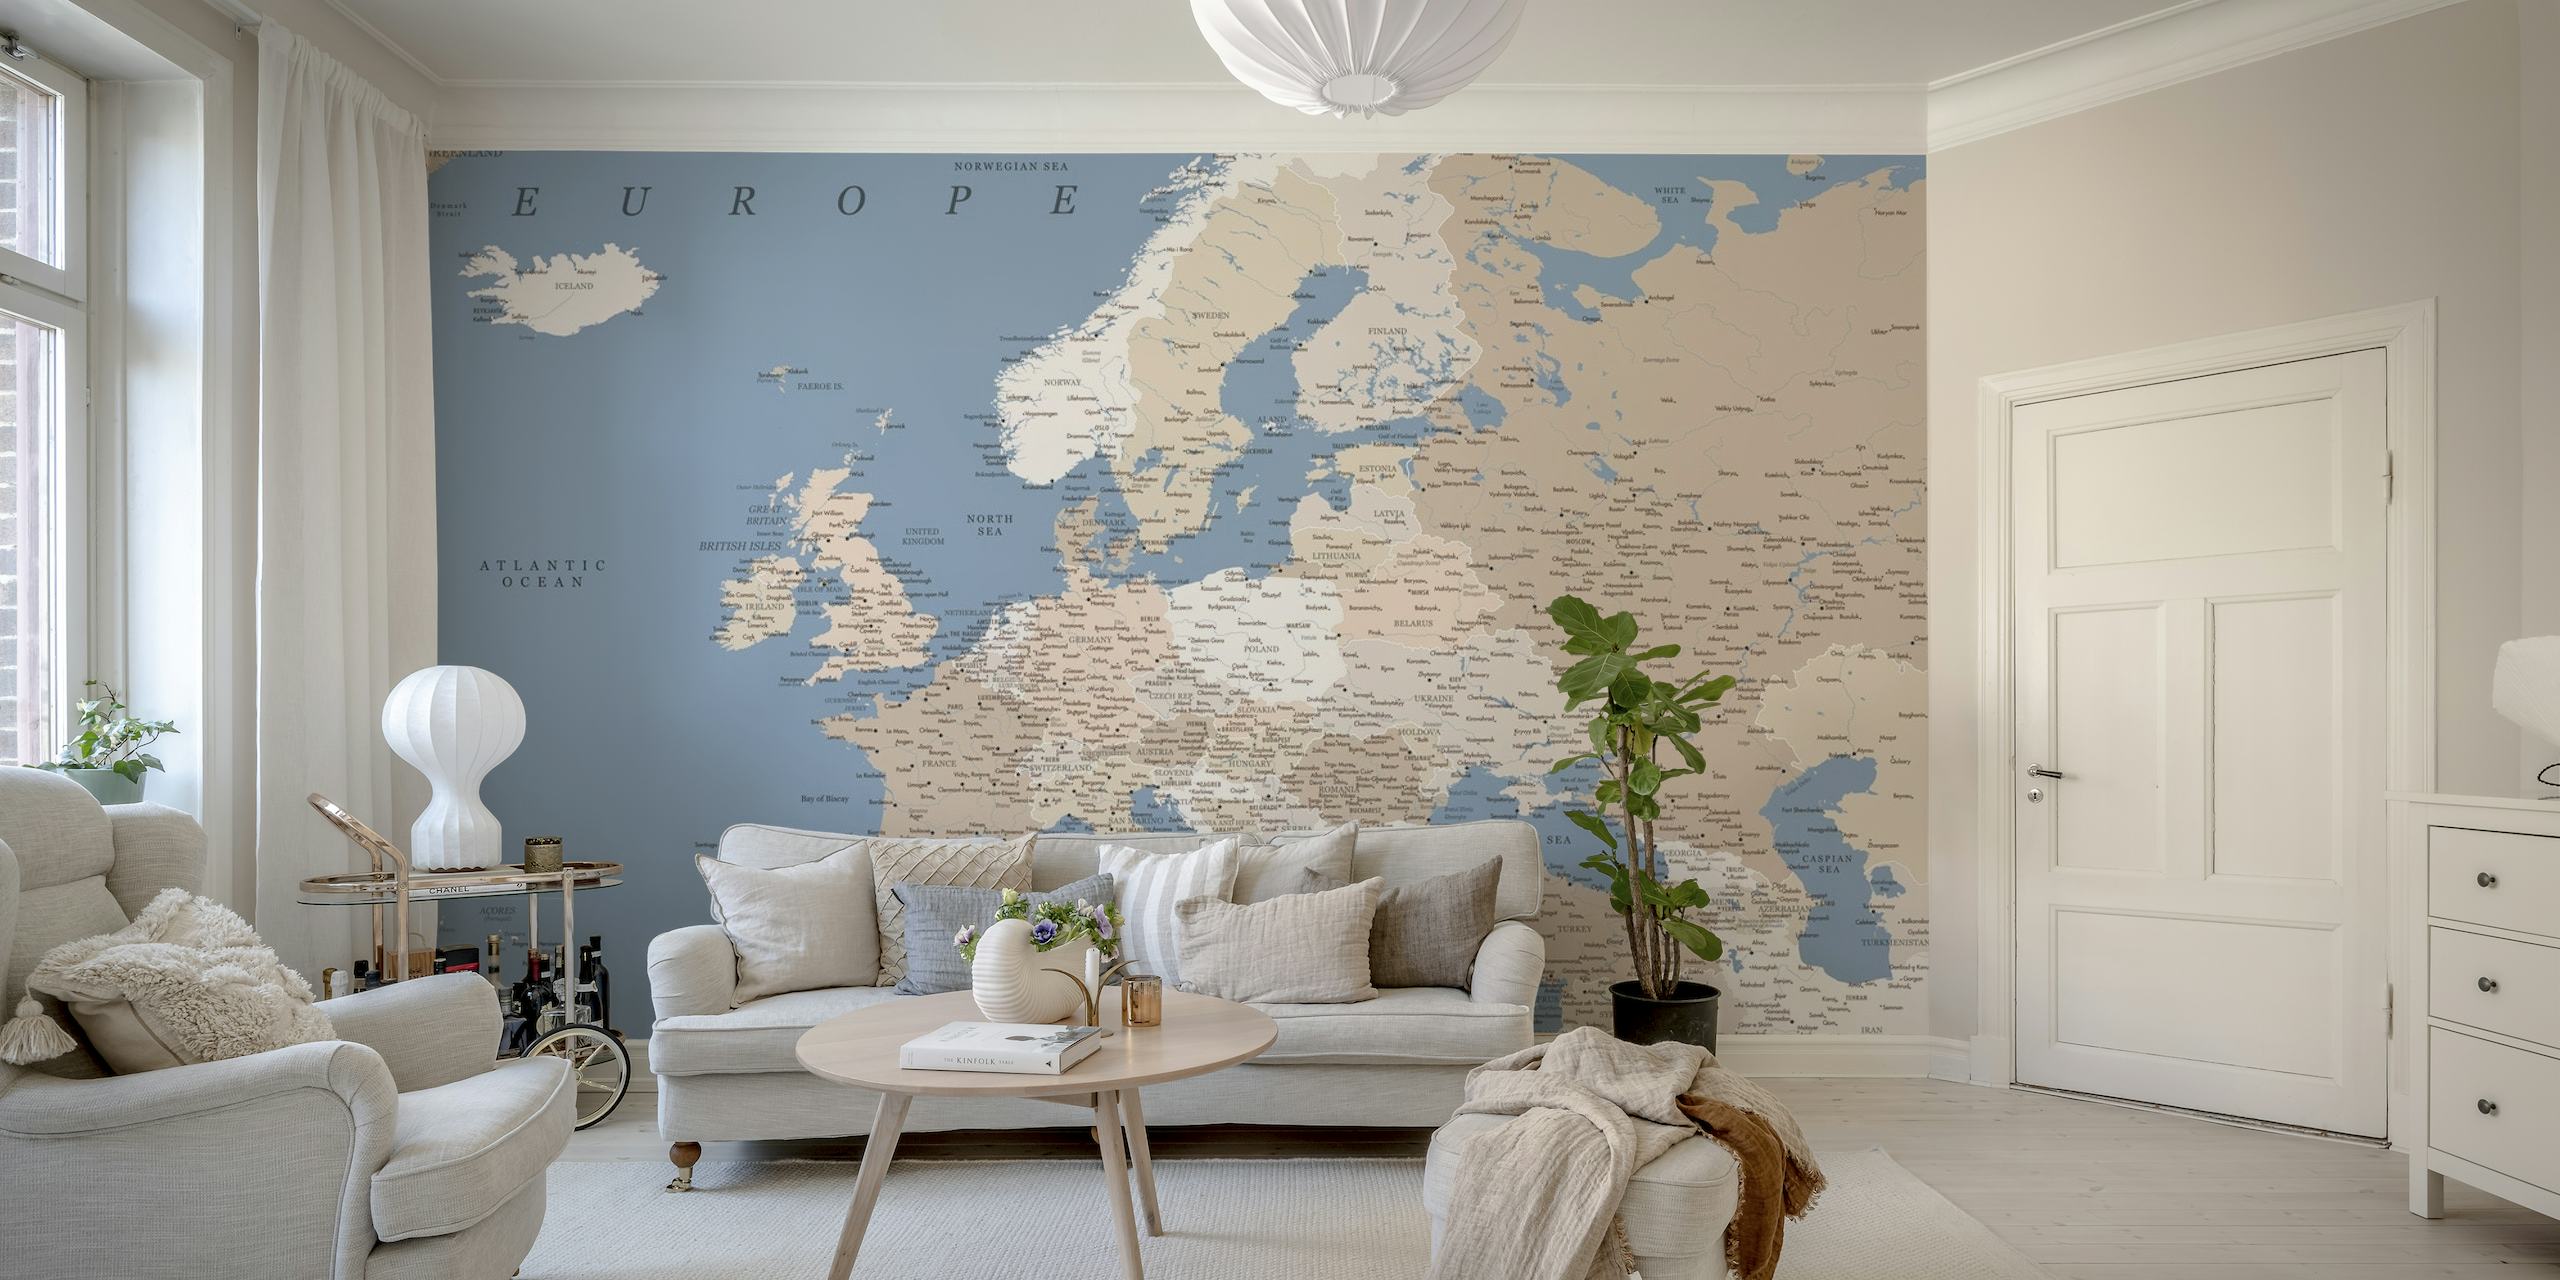 Gedetailleerde kaart van Europa muurschildering voor interieurdecoratie